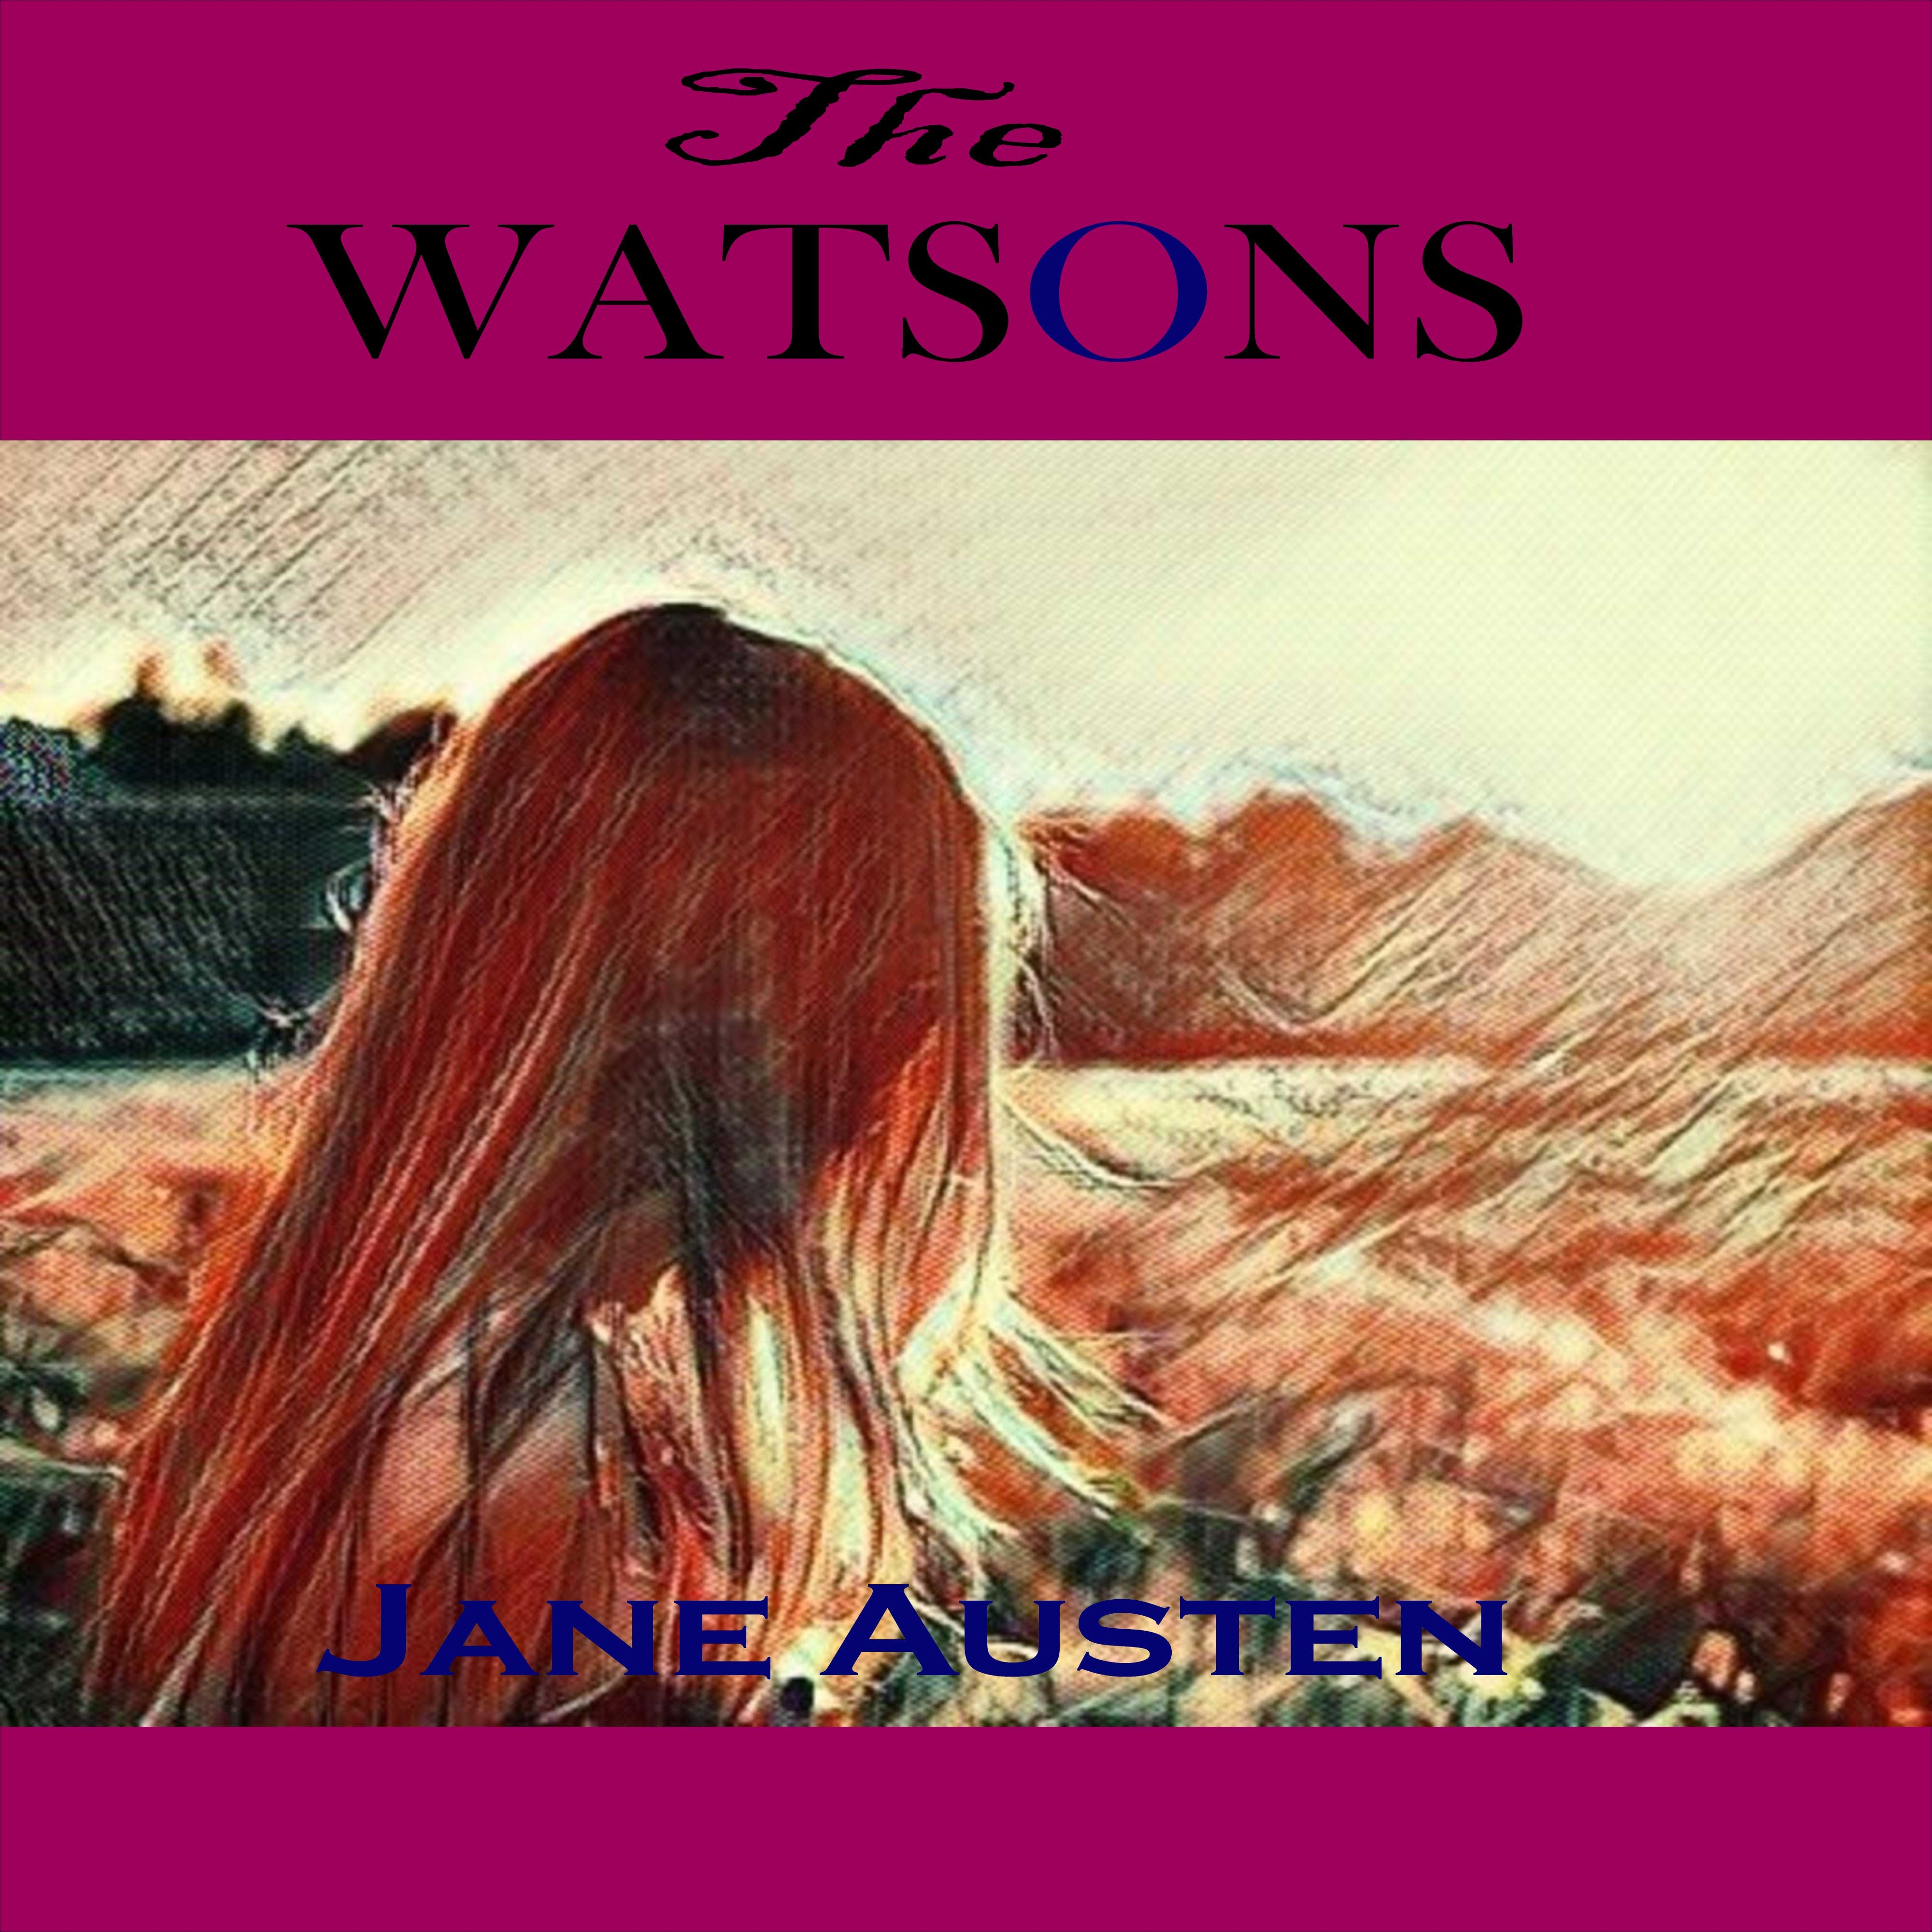 Jane Austen: The Watsons